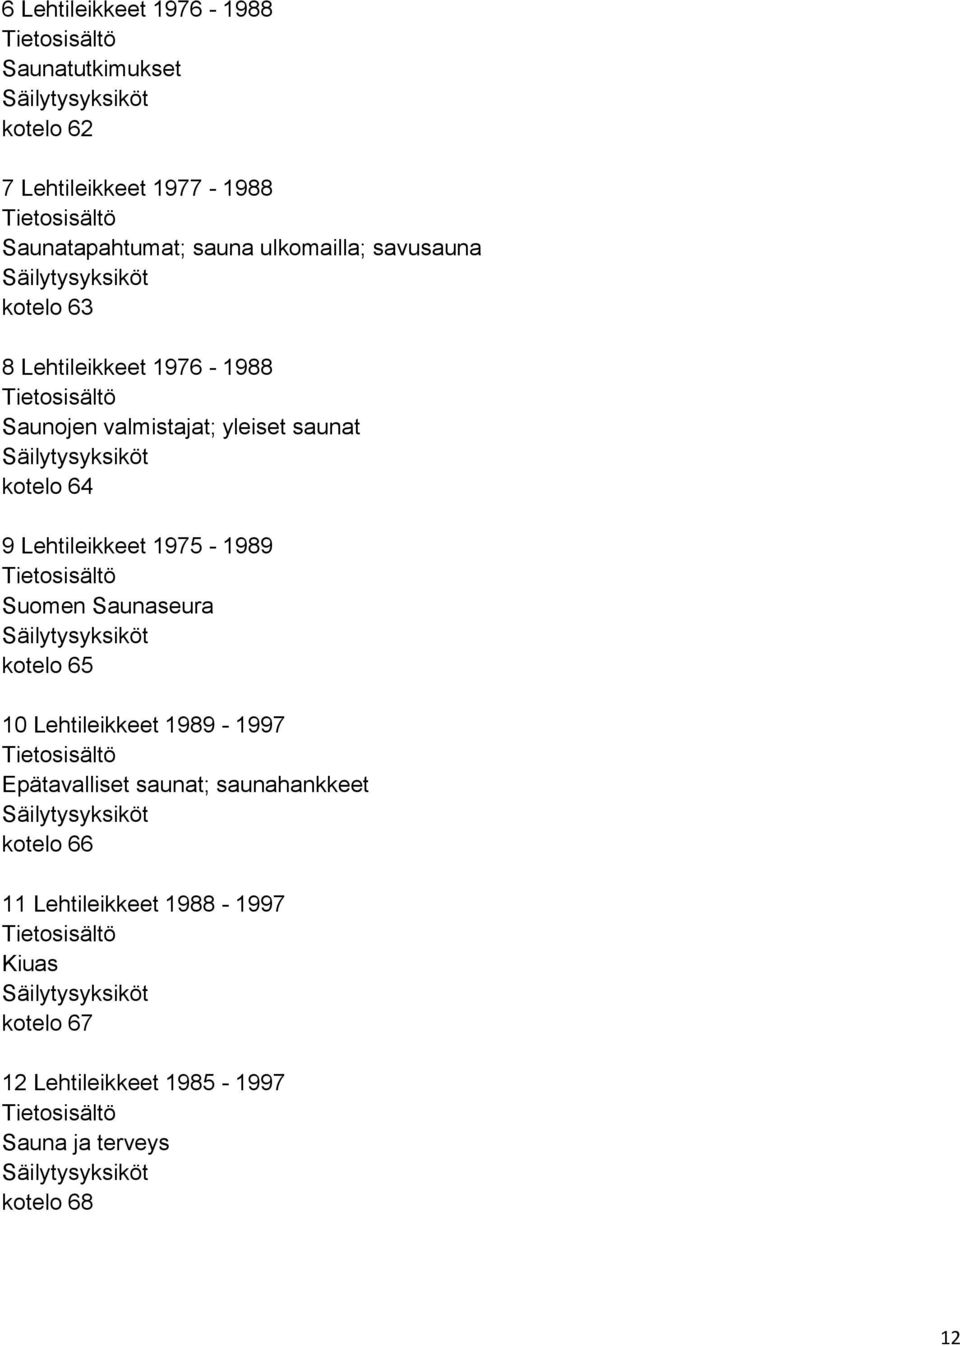 Lehtileikkeet 1975-1989 Suomen Saunaseura kotelo 65 10 Lehtileikkeet 1989-1997 Epätavalliset saunat;